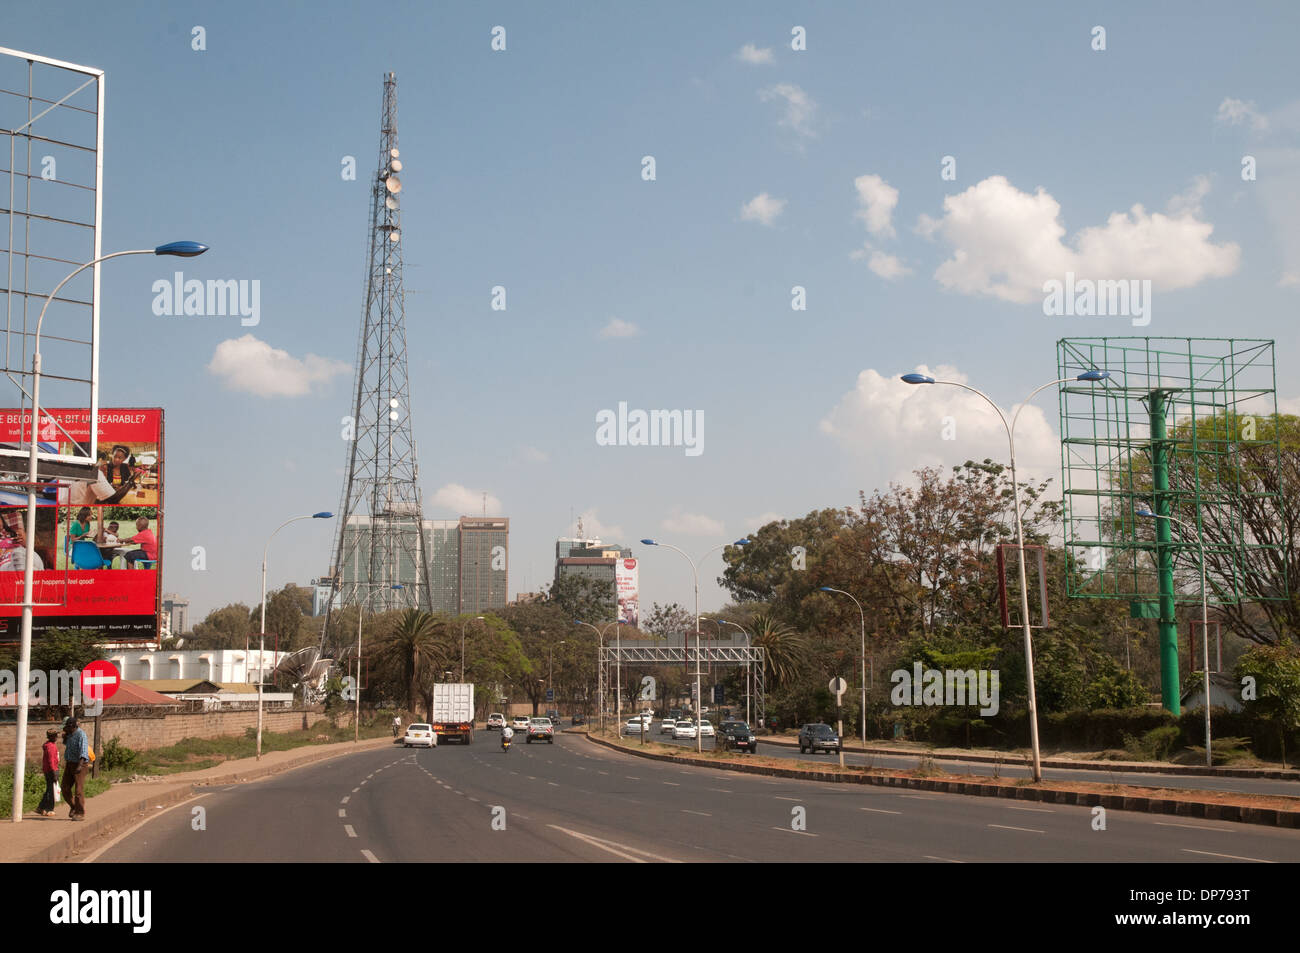 Voix de la radio et des communications du Kenya tour sur autoroute Uhuru Nairobi Kenya Afrique Banque D'Images